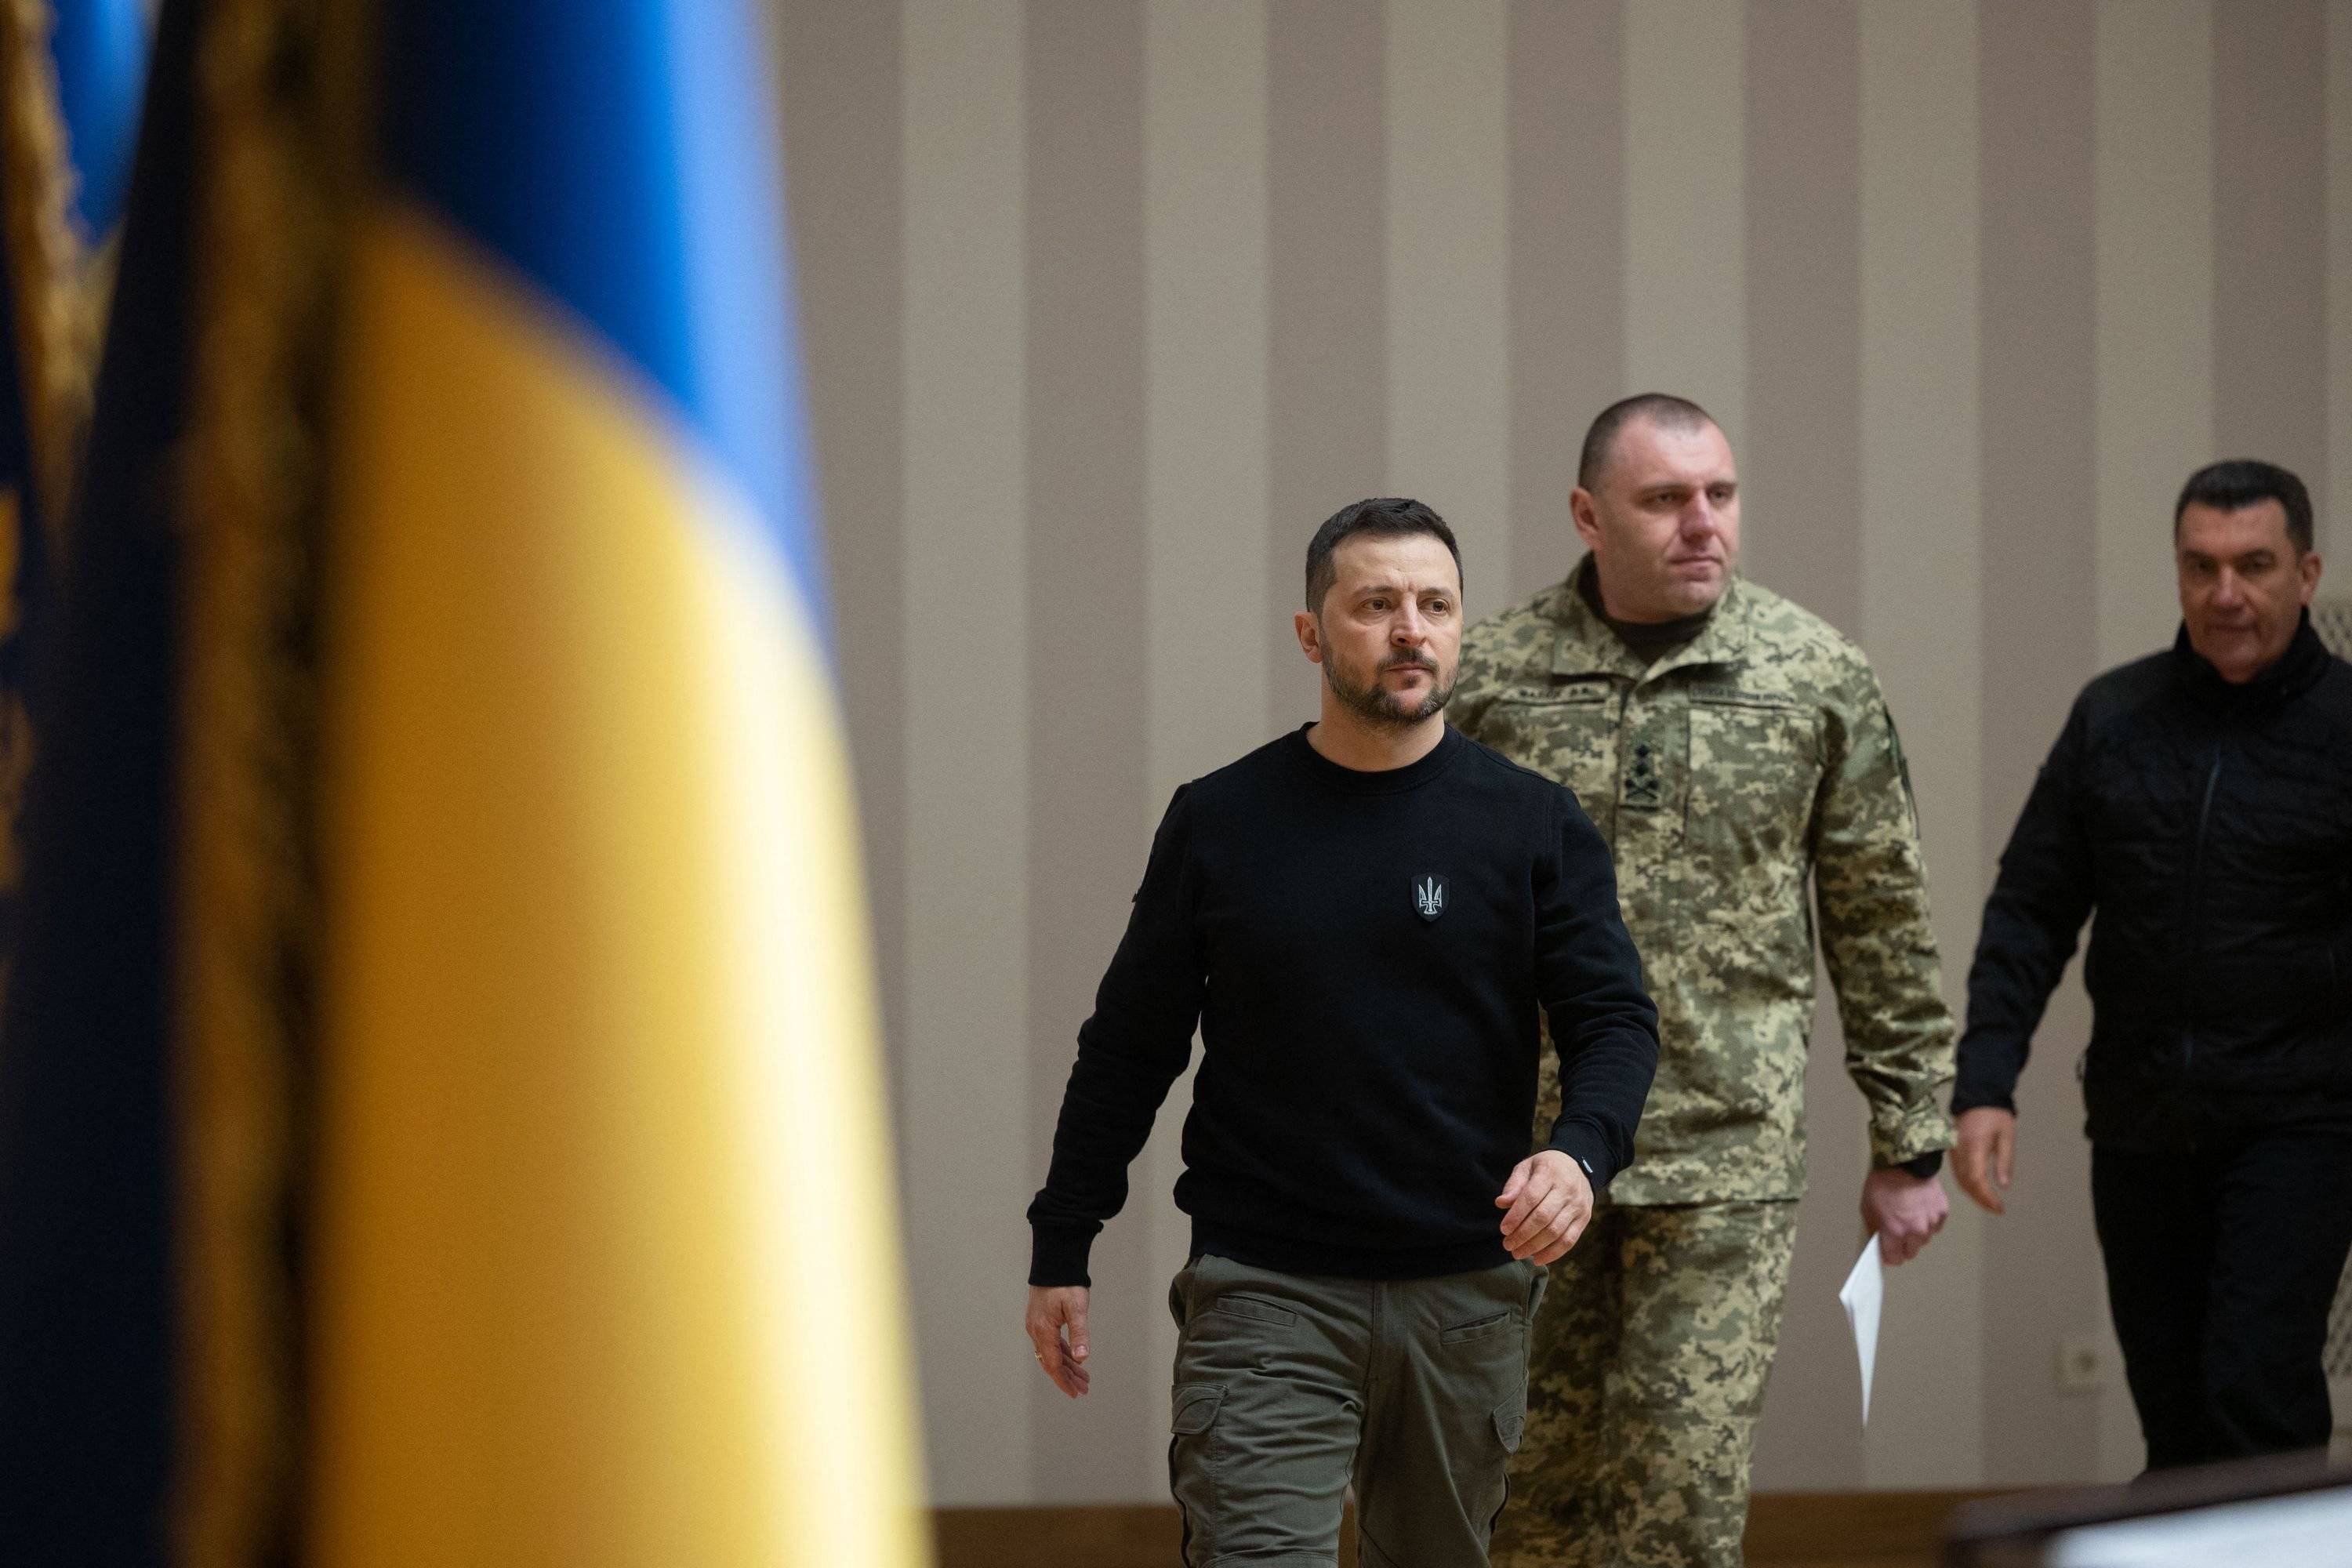 Na zdjęciu są dwaj mężczyźni - prezydent Ukrainy (w czarnym sweterze) oraz szef SBU Maluk. Po lewej stronie widać fragment flagi Ukrainy.